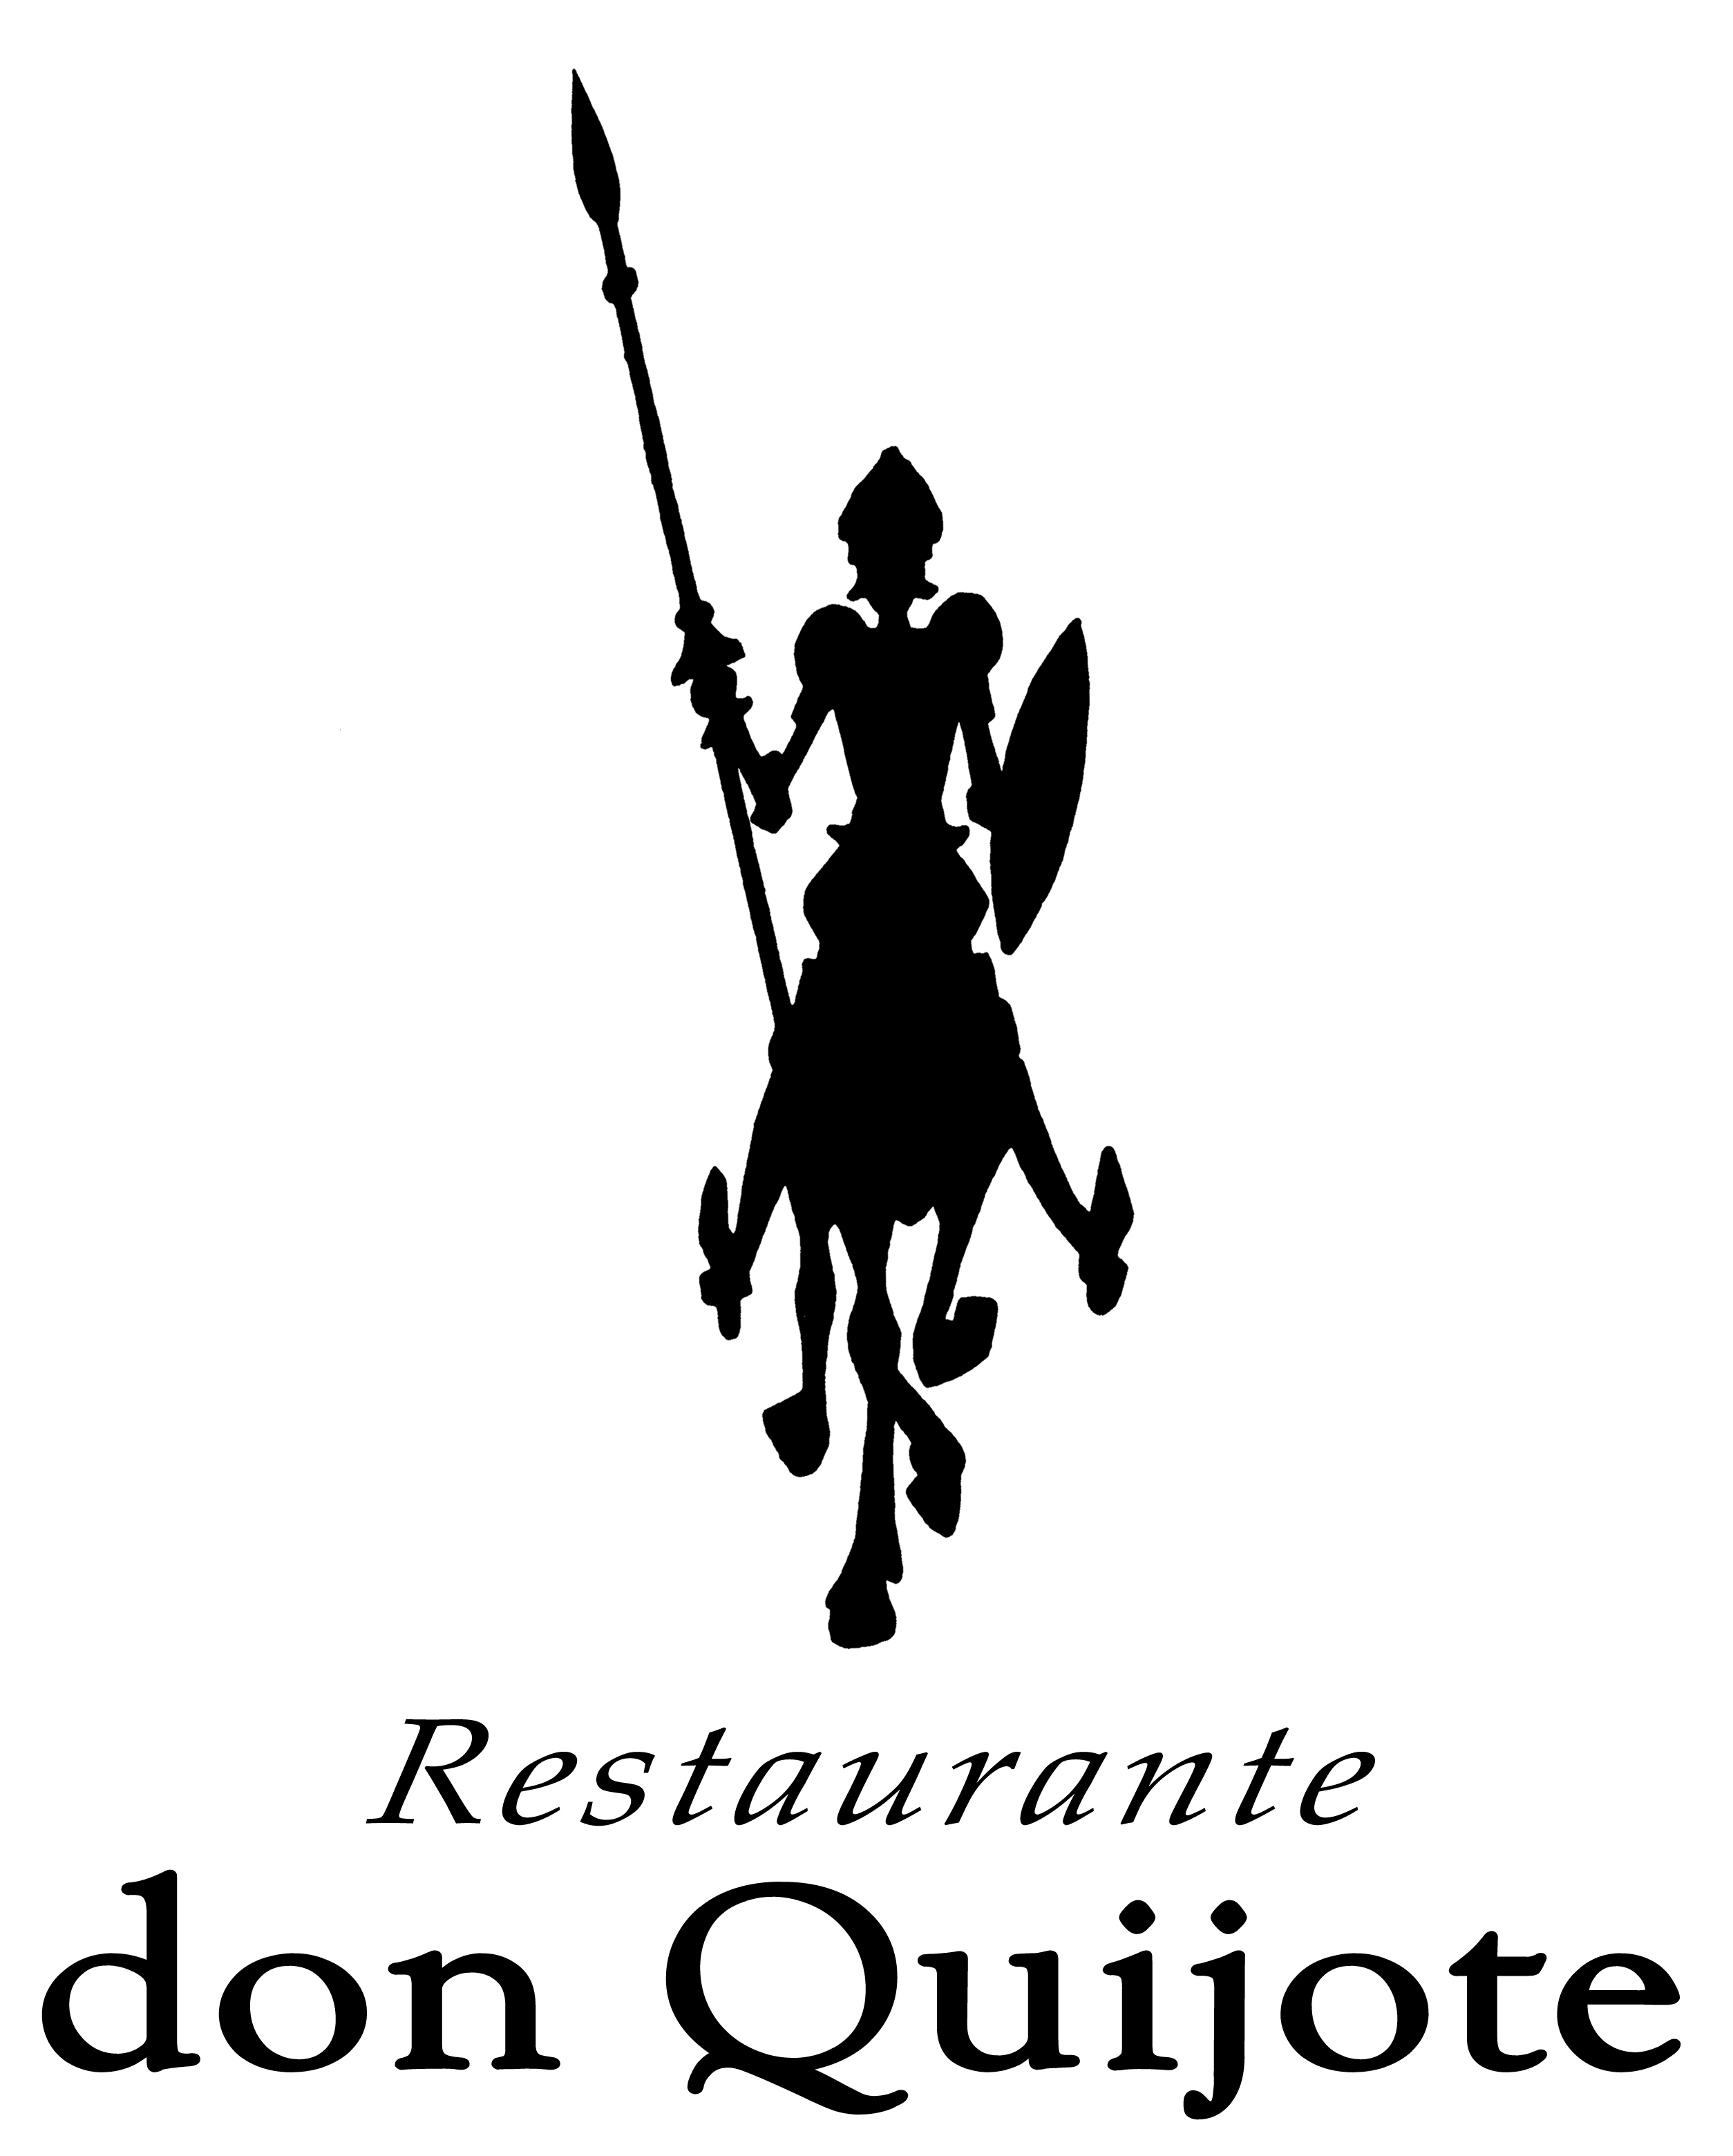 Don Quijote Restaurant